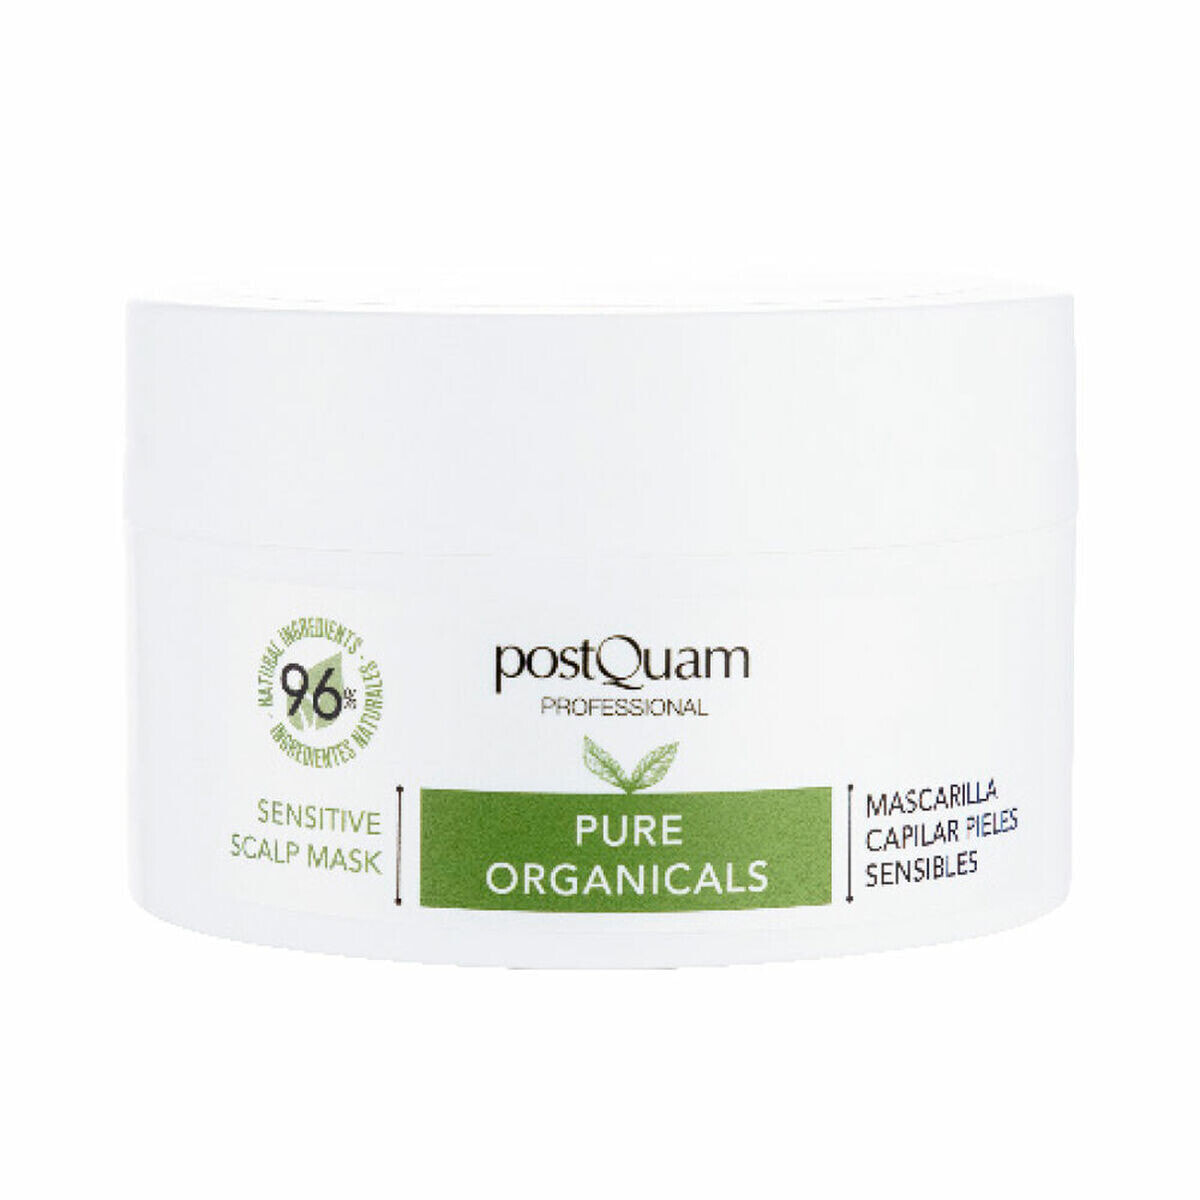 PostQuam Pure Organicals Sensitive Scalp Mask Маска для чувствительной кожи головы 250 мл